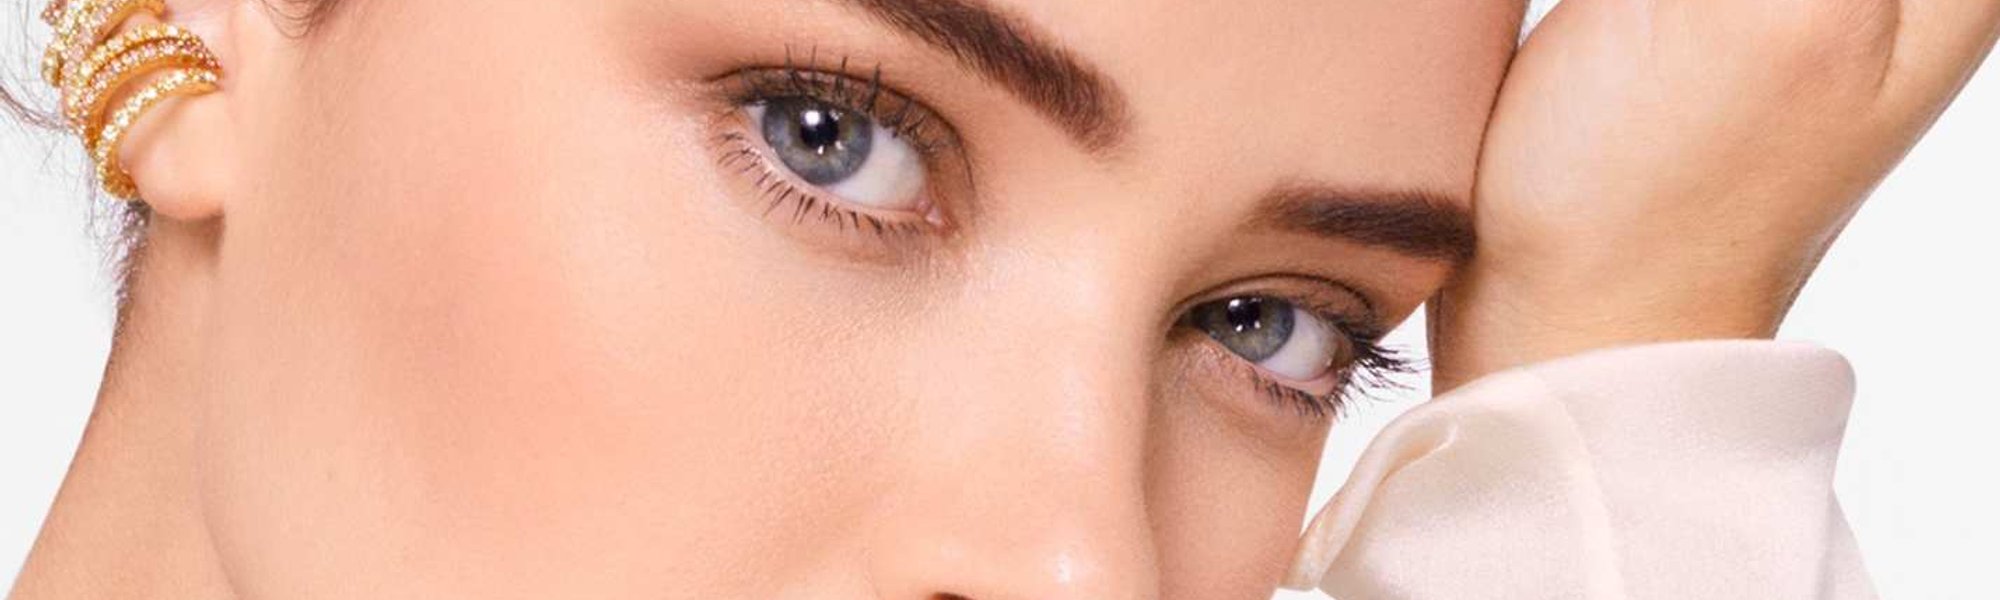 Cómo cubrir y tapar manchas de la cara con maquillaje| L'Oréal Paris